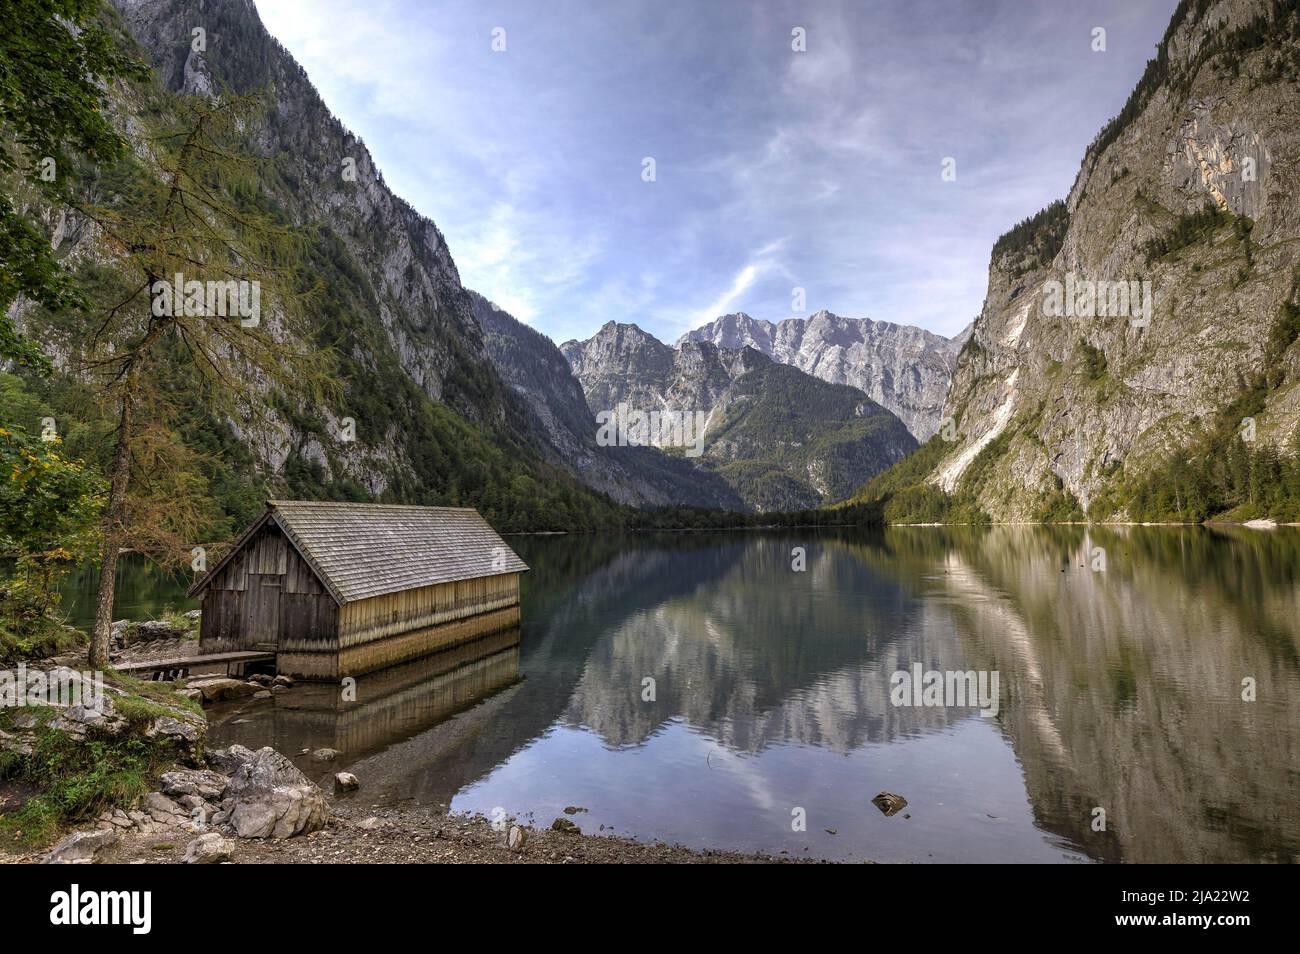 Blick auf Watzman vom Obersee nahe Koenigssee, Berchtesgaden, Bayern, Allemagne Banque D'Images